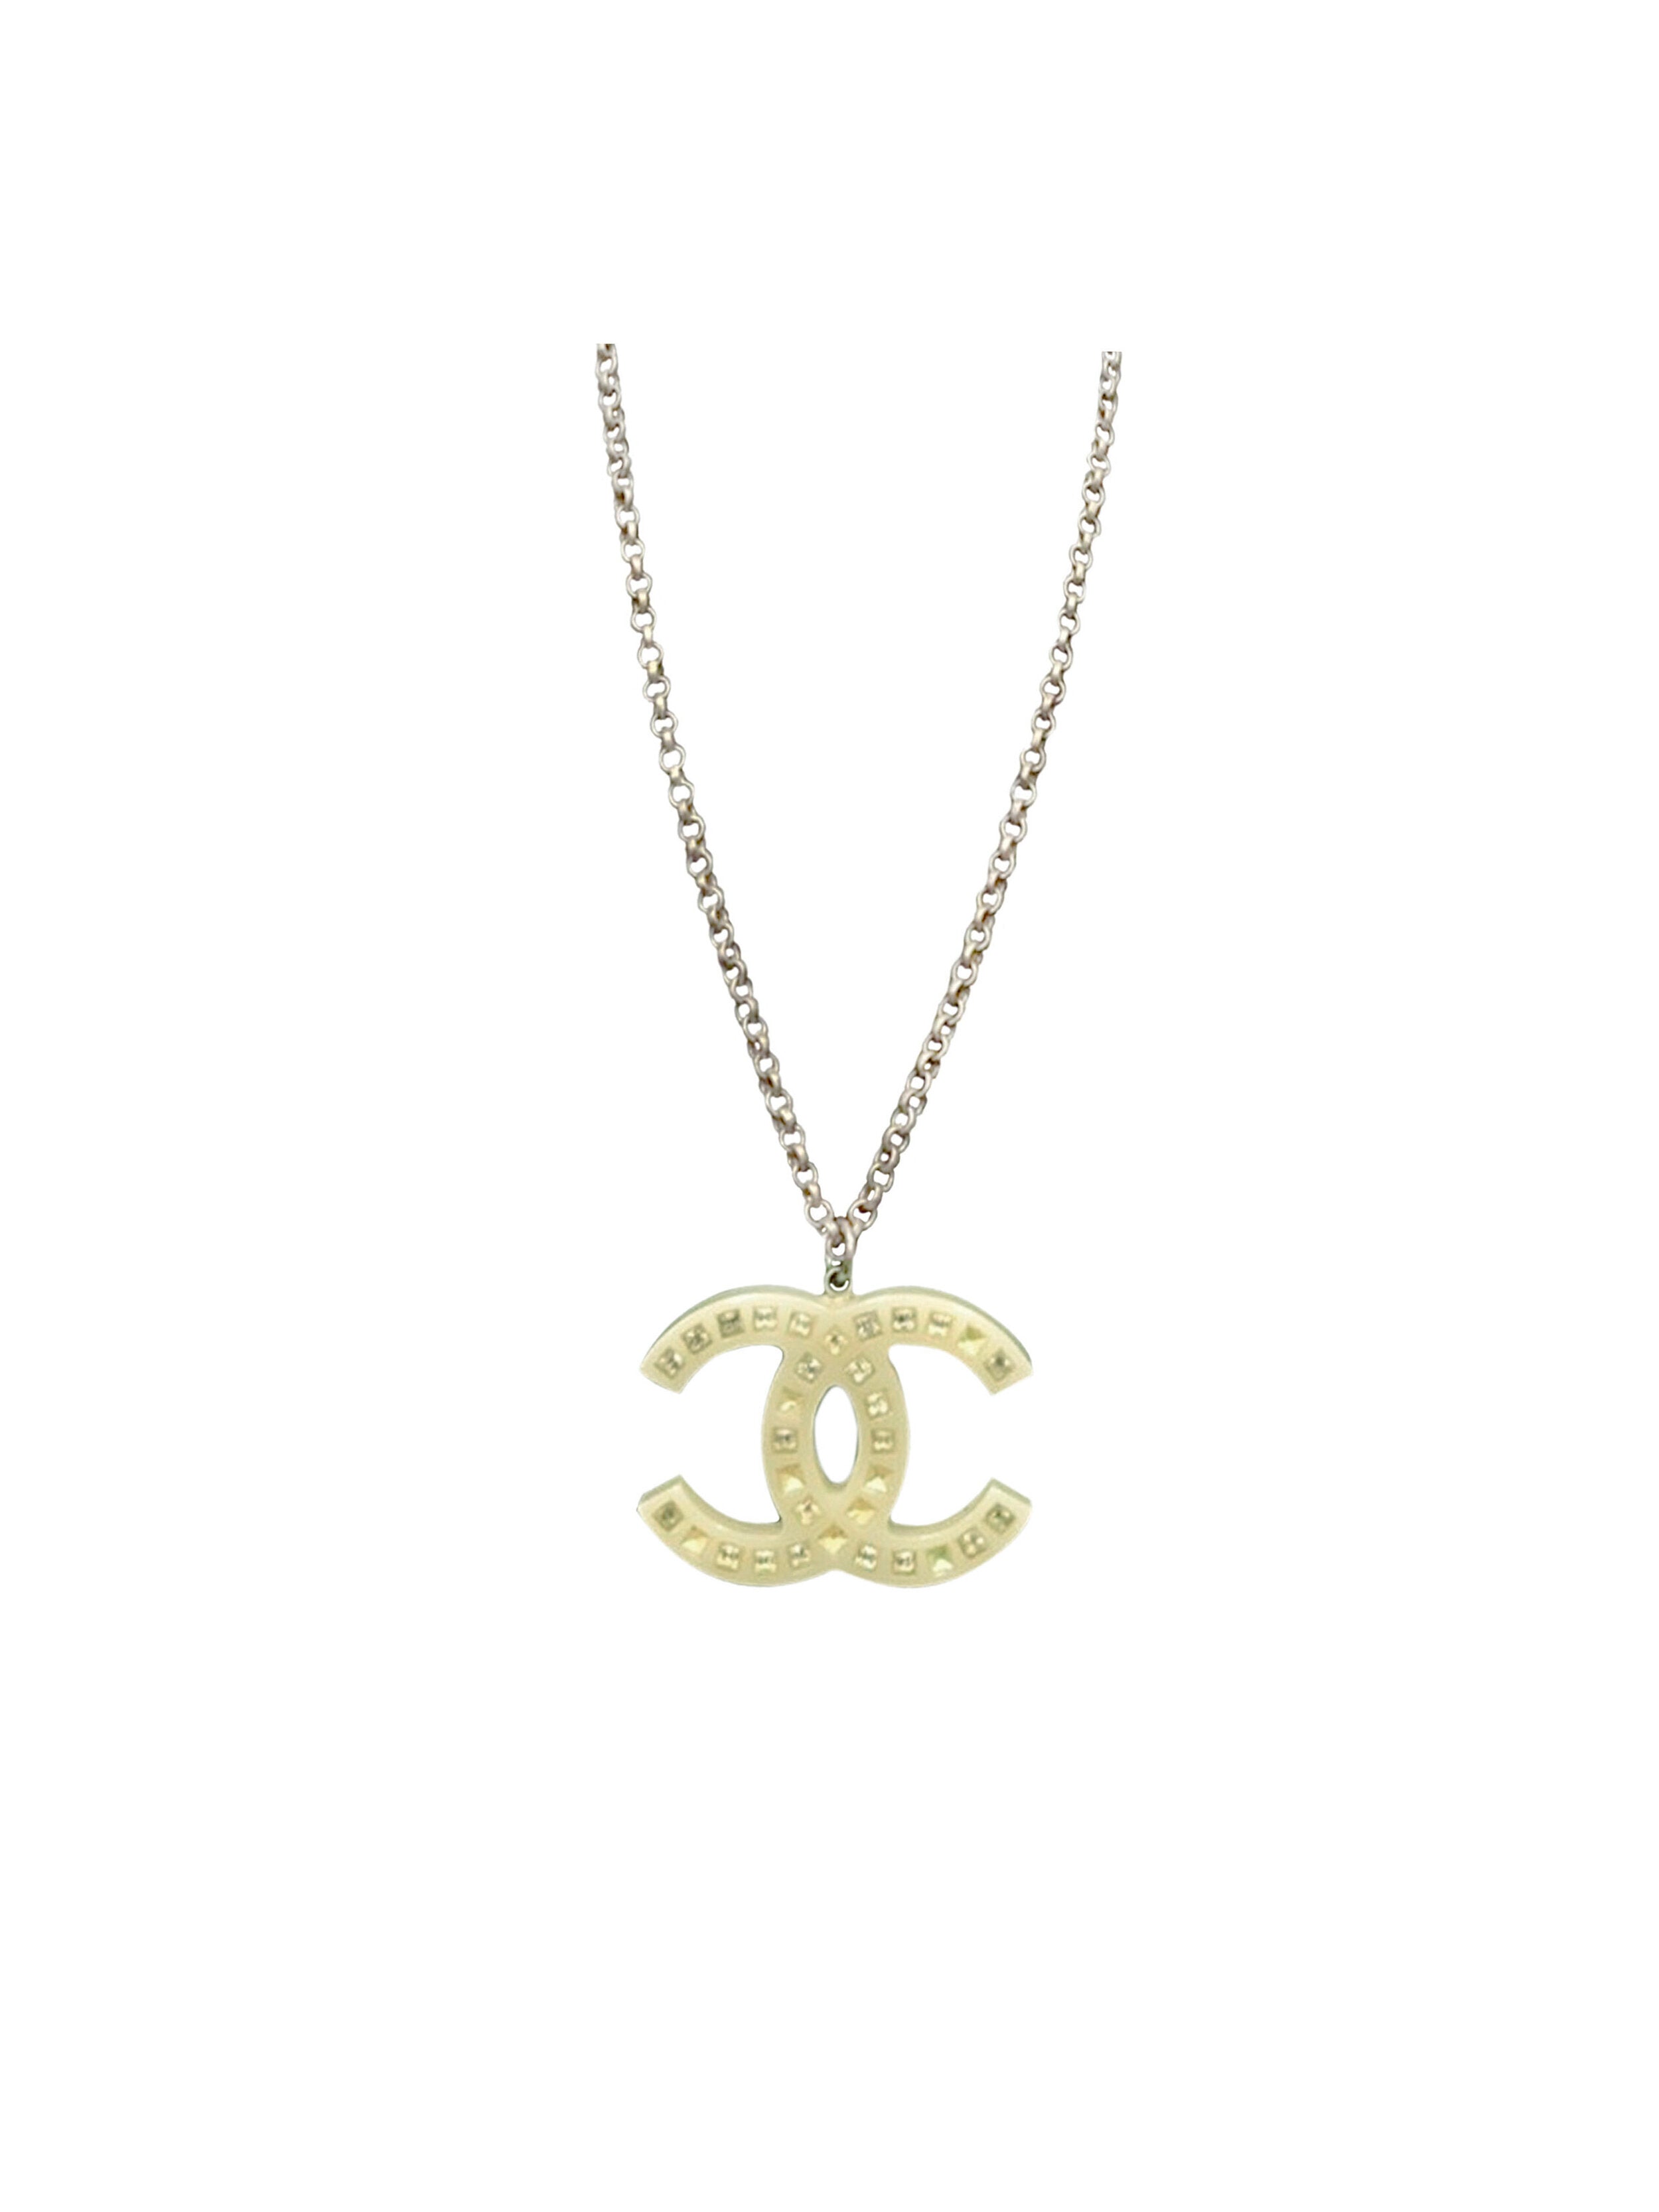 CC Necklace | Fancy jewelry, Crystal beads bracelet, Necklace